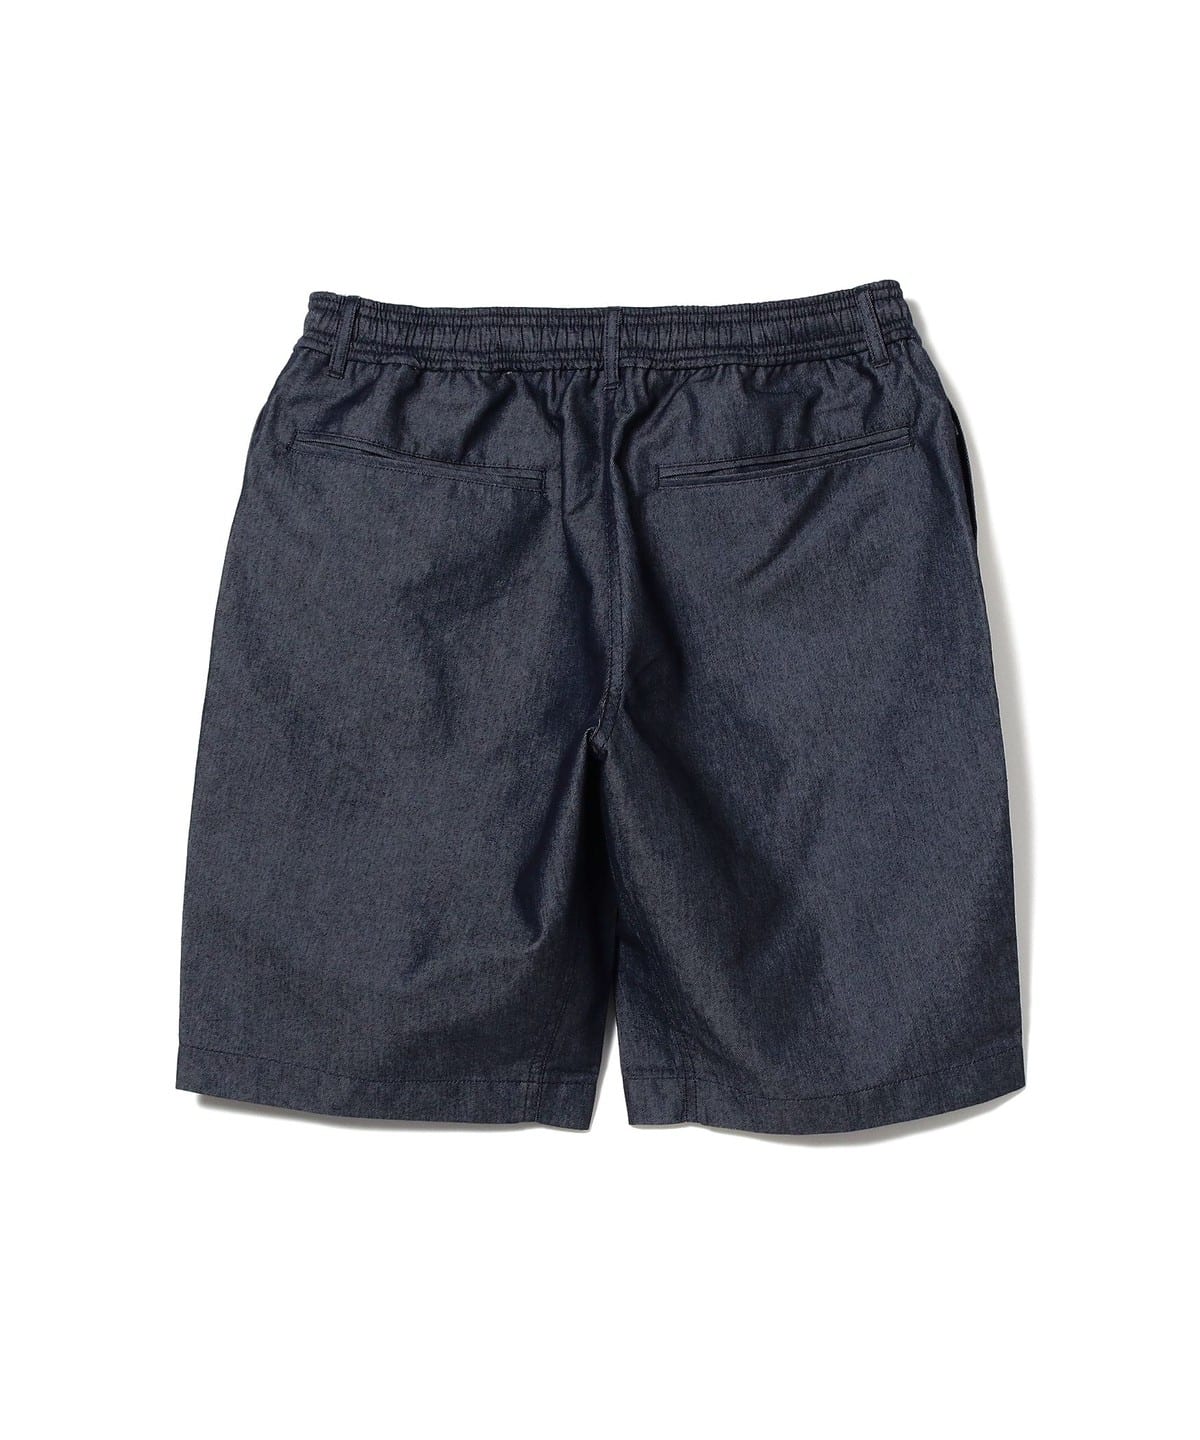 BEAMS [BEAMS] WILD THINGS / Nanotex denim shorts (pants shorts 